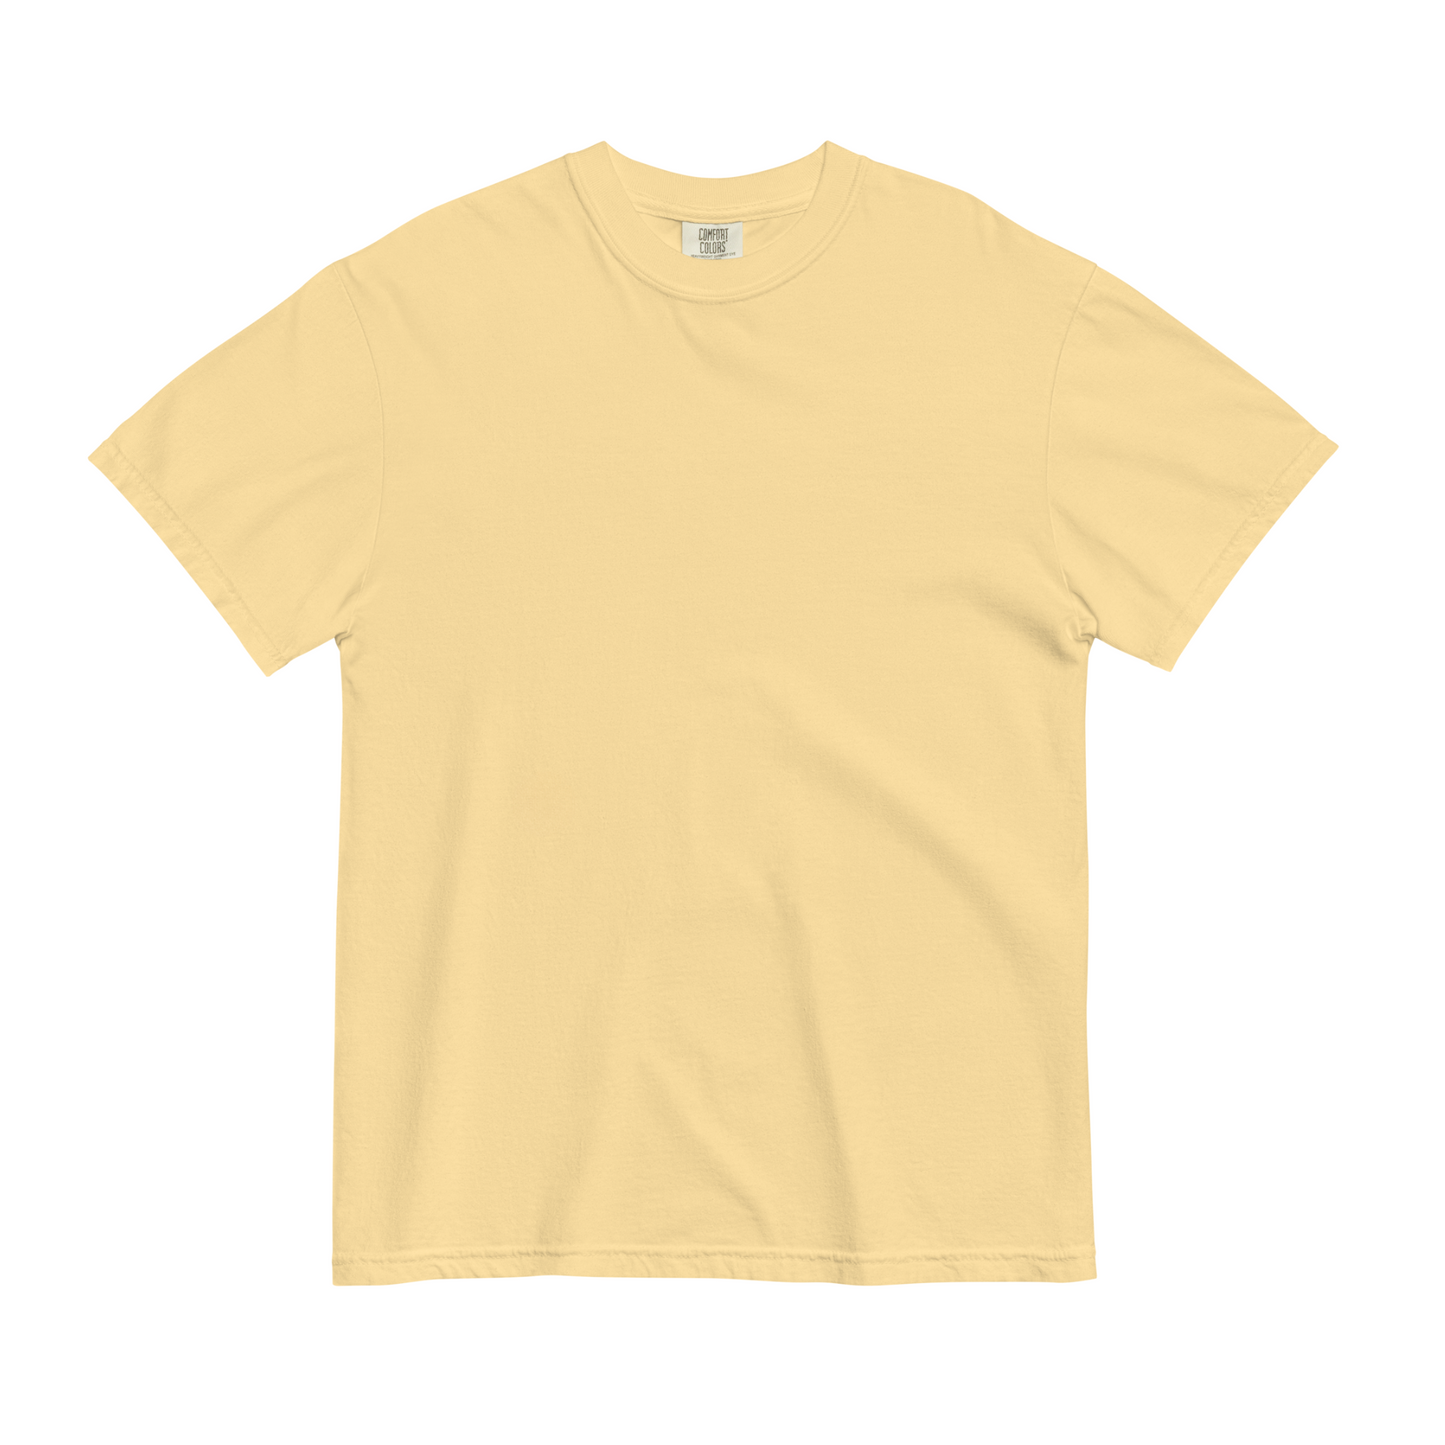 Canoe Logo Custom Lake garment-dyed t-shirt